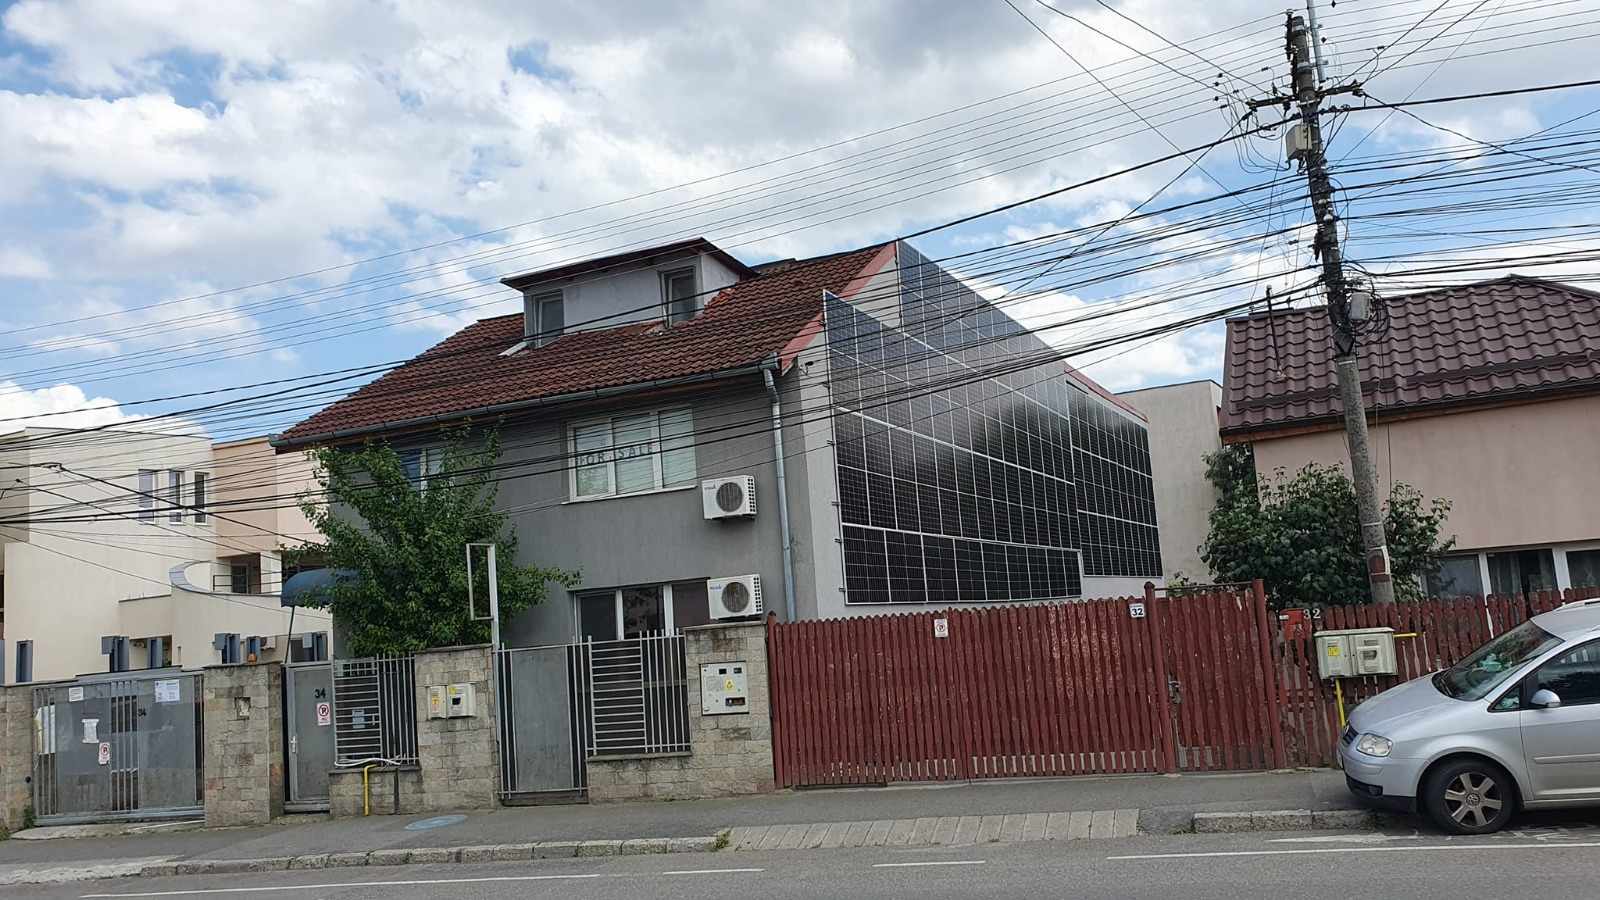 Casa din Cluj Napoca acoperită de panouri solare: „Am crezut că am văzut multe, dar nivelul unora este... inimaginabil. Nu am mai văzut panouri fotovoltaice care să tapeteze pereții” 1